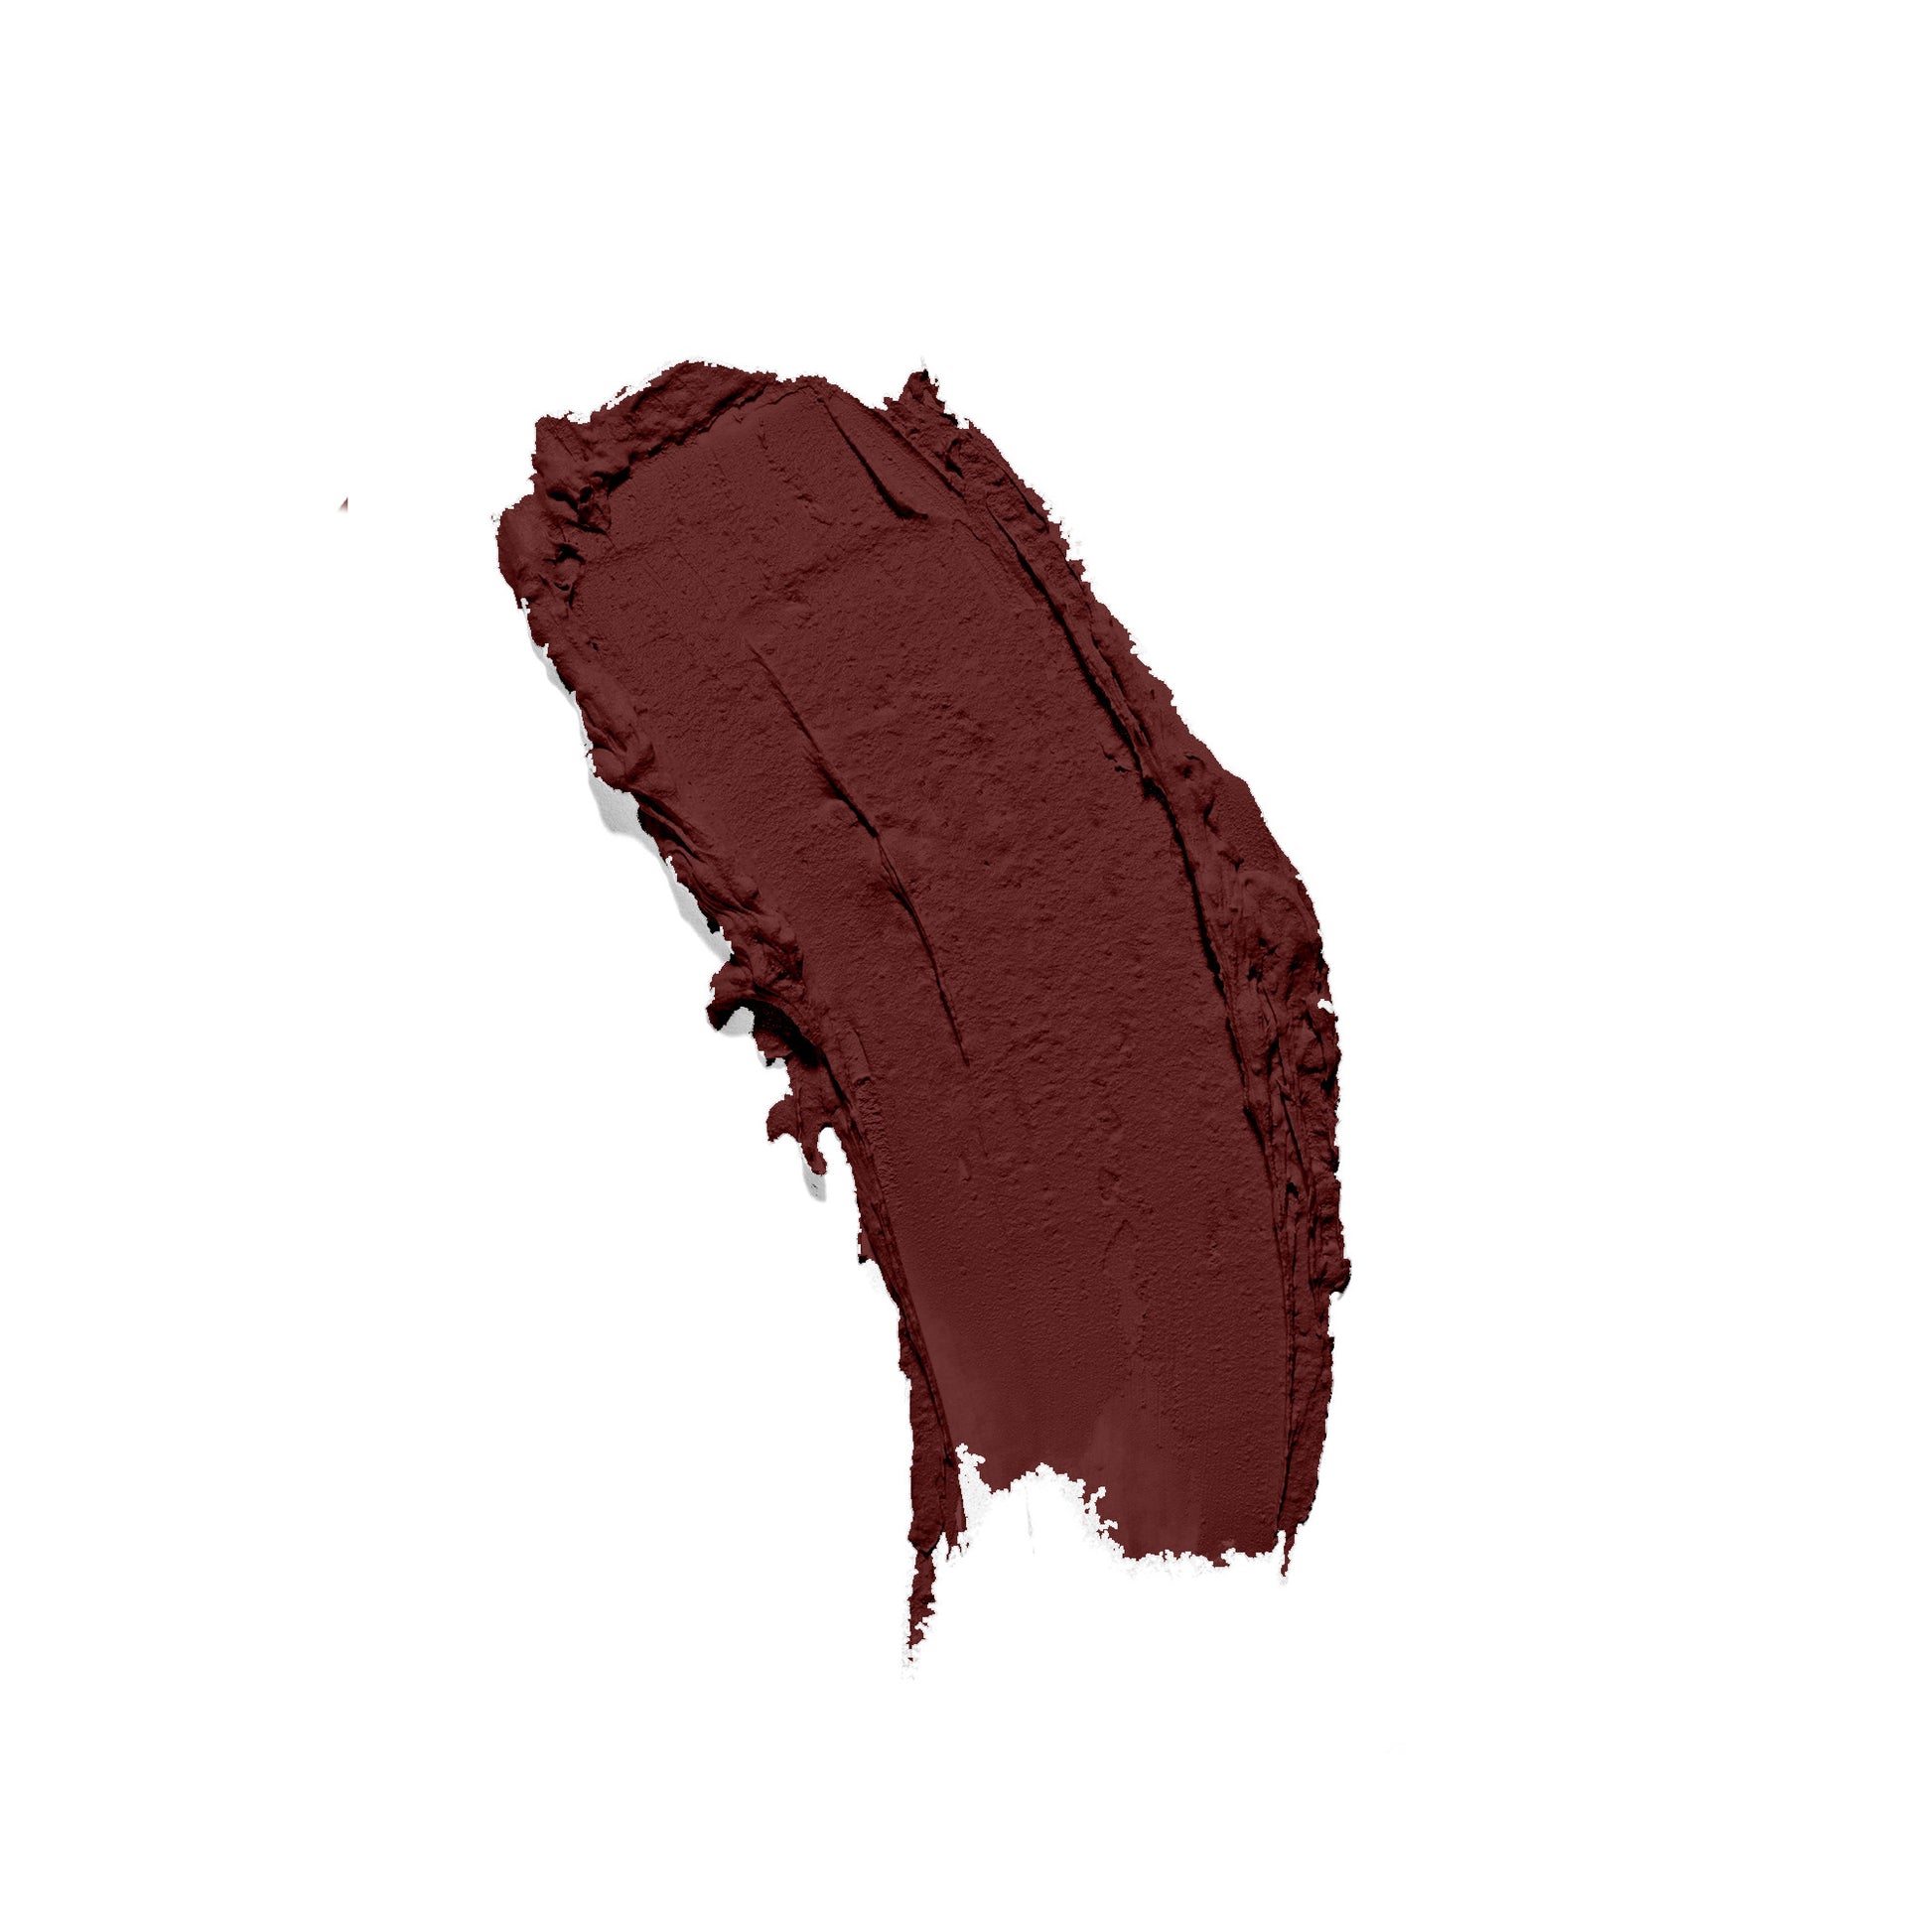 89% Chocolate - Premium lipstick from Concordia Style Boutique - Just $17! Shop now at Concordia Style Boutique